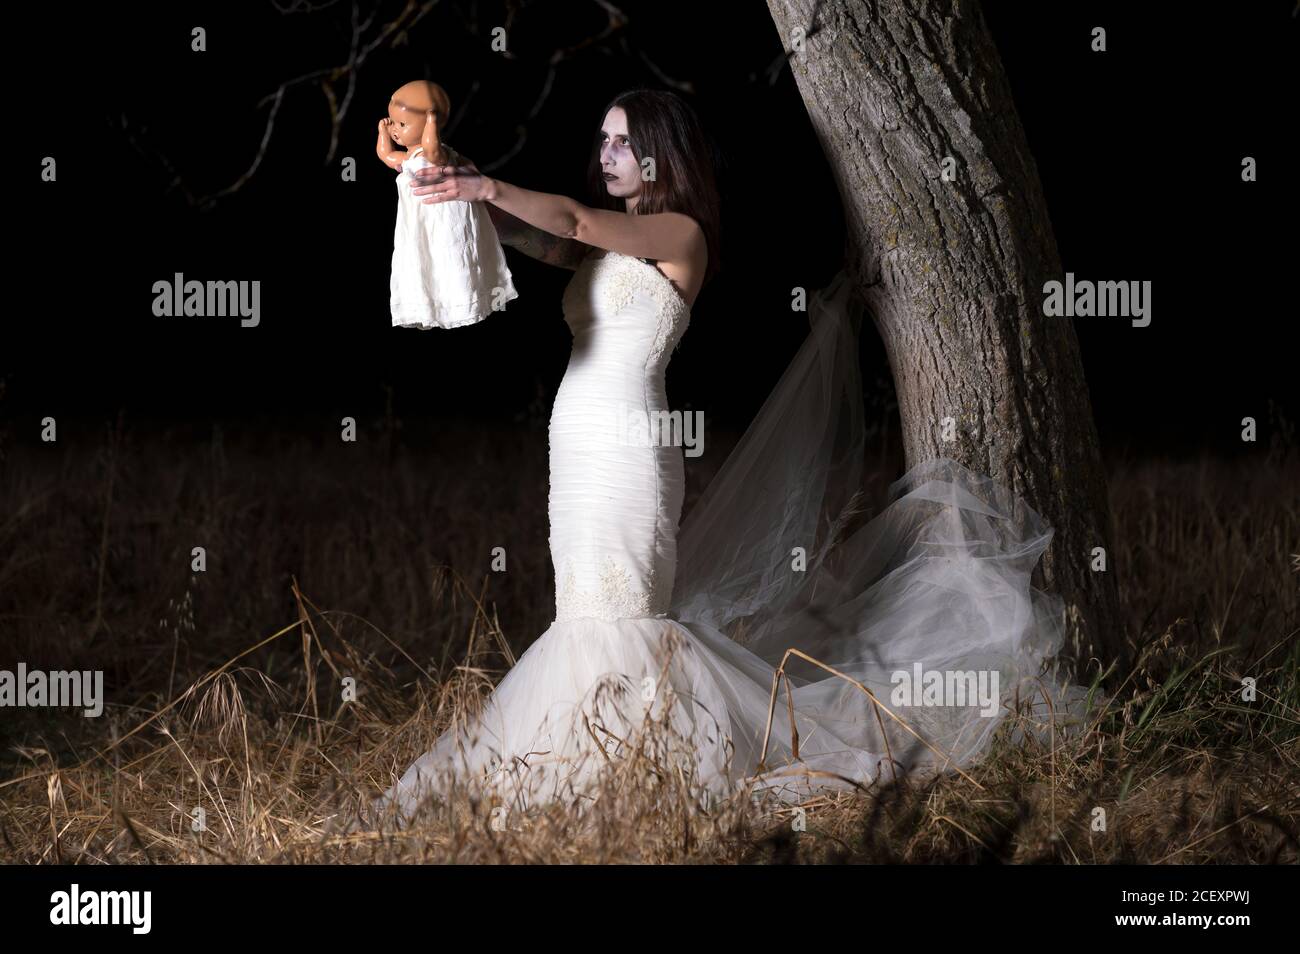 Scène d'horreur d'une femme possédée tenant une poupée. Photo de haute qualité Banque D'Images